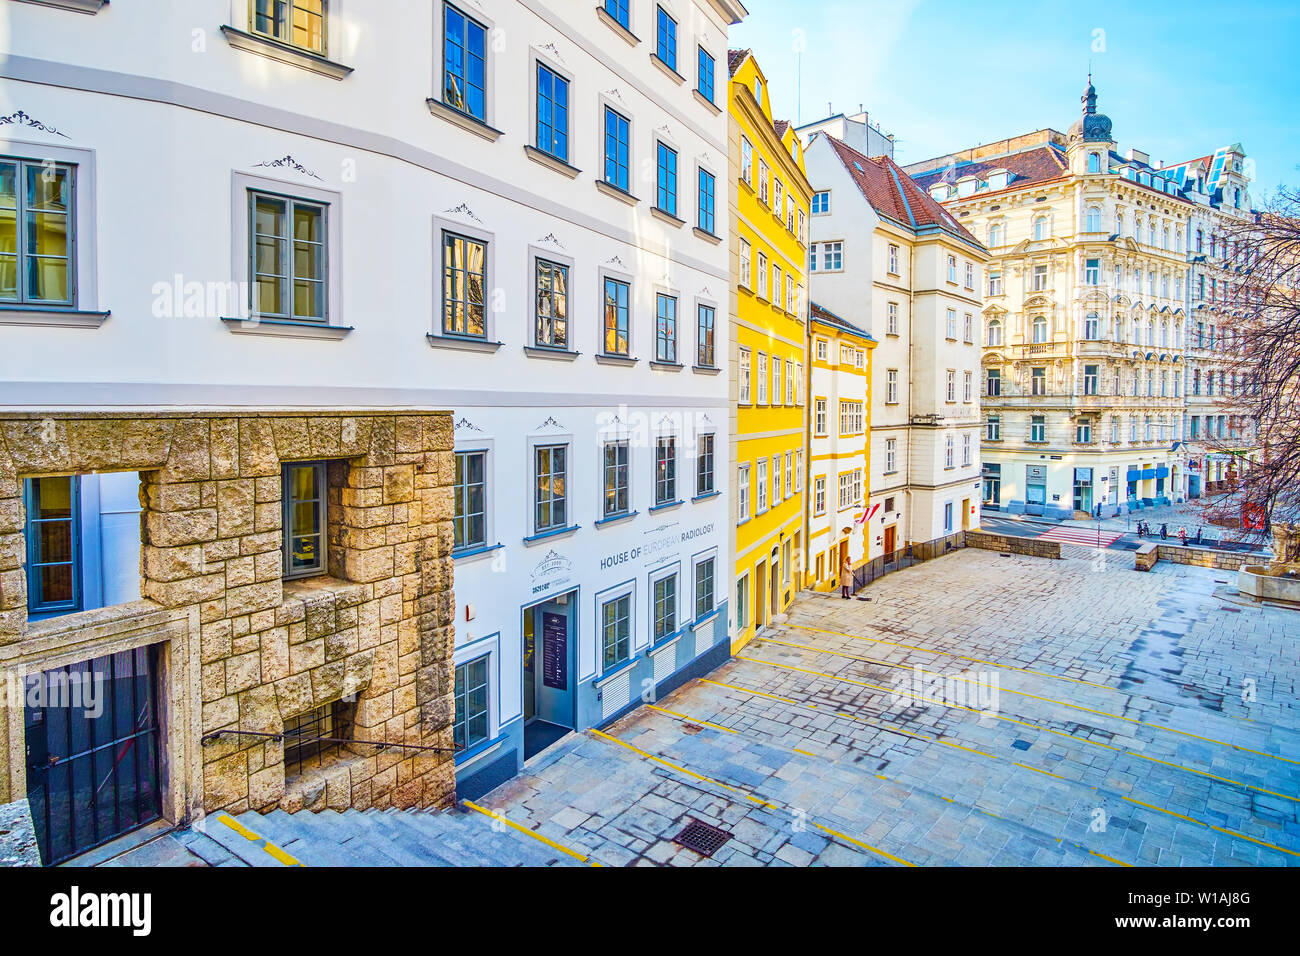 Wien, Österreich - 18. FEBRUAR 2019: Die mittelalterliche Am Gestade Bereich in der alten Stadt mit großen Treppen und historischen Villen auf it-Seite, führen zu neueren Stockfoto